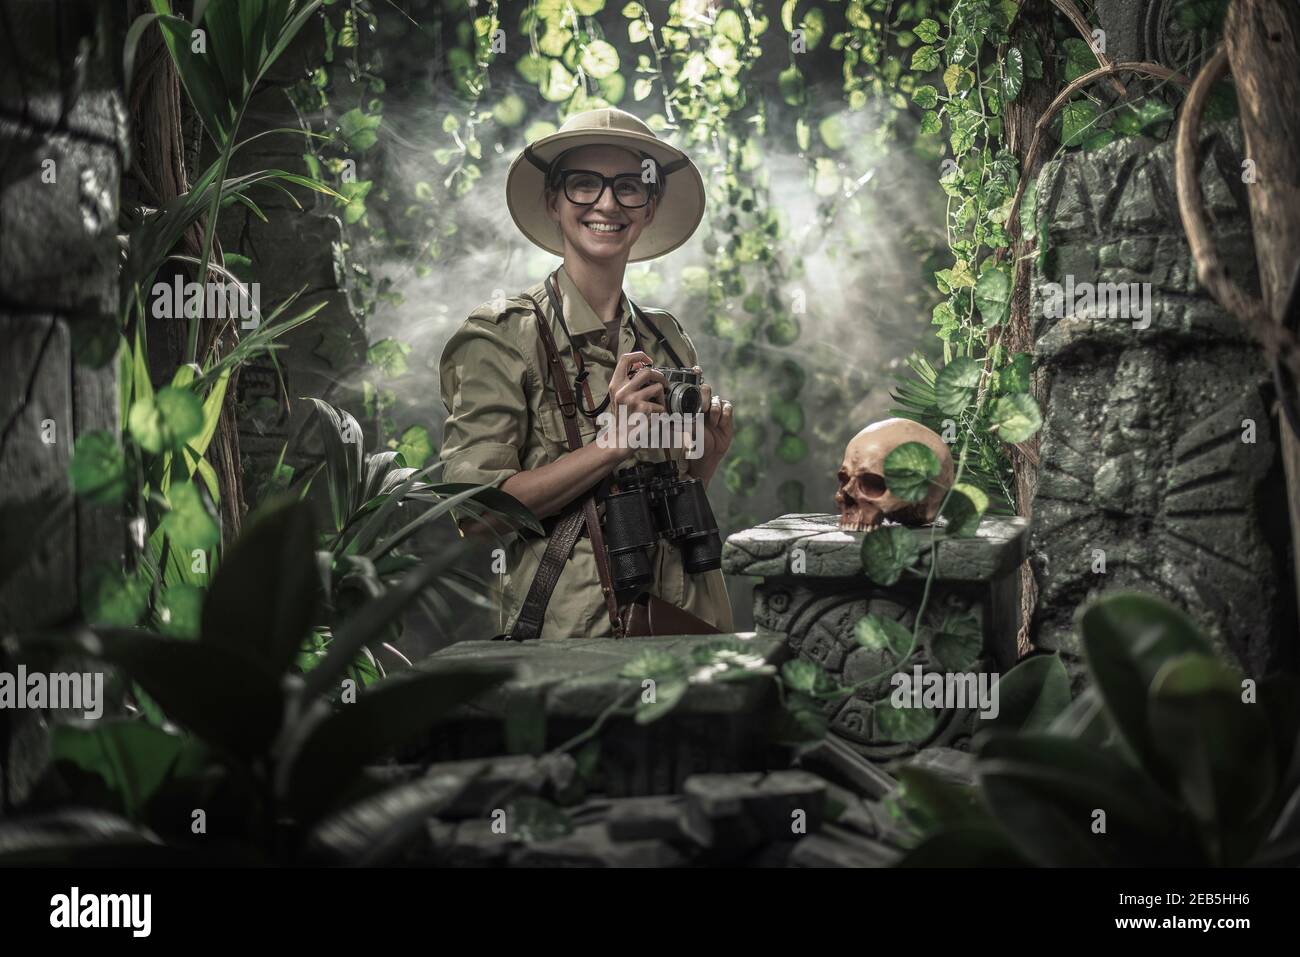 Femme courageuse explorant la jungle et prenant des photos avec son appareil photo, elle trouve des ruines antiques et un crâne humain Banque D'Images